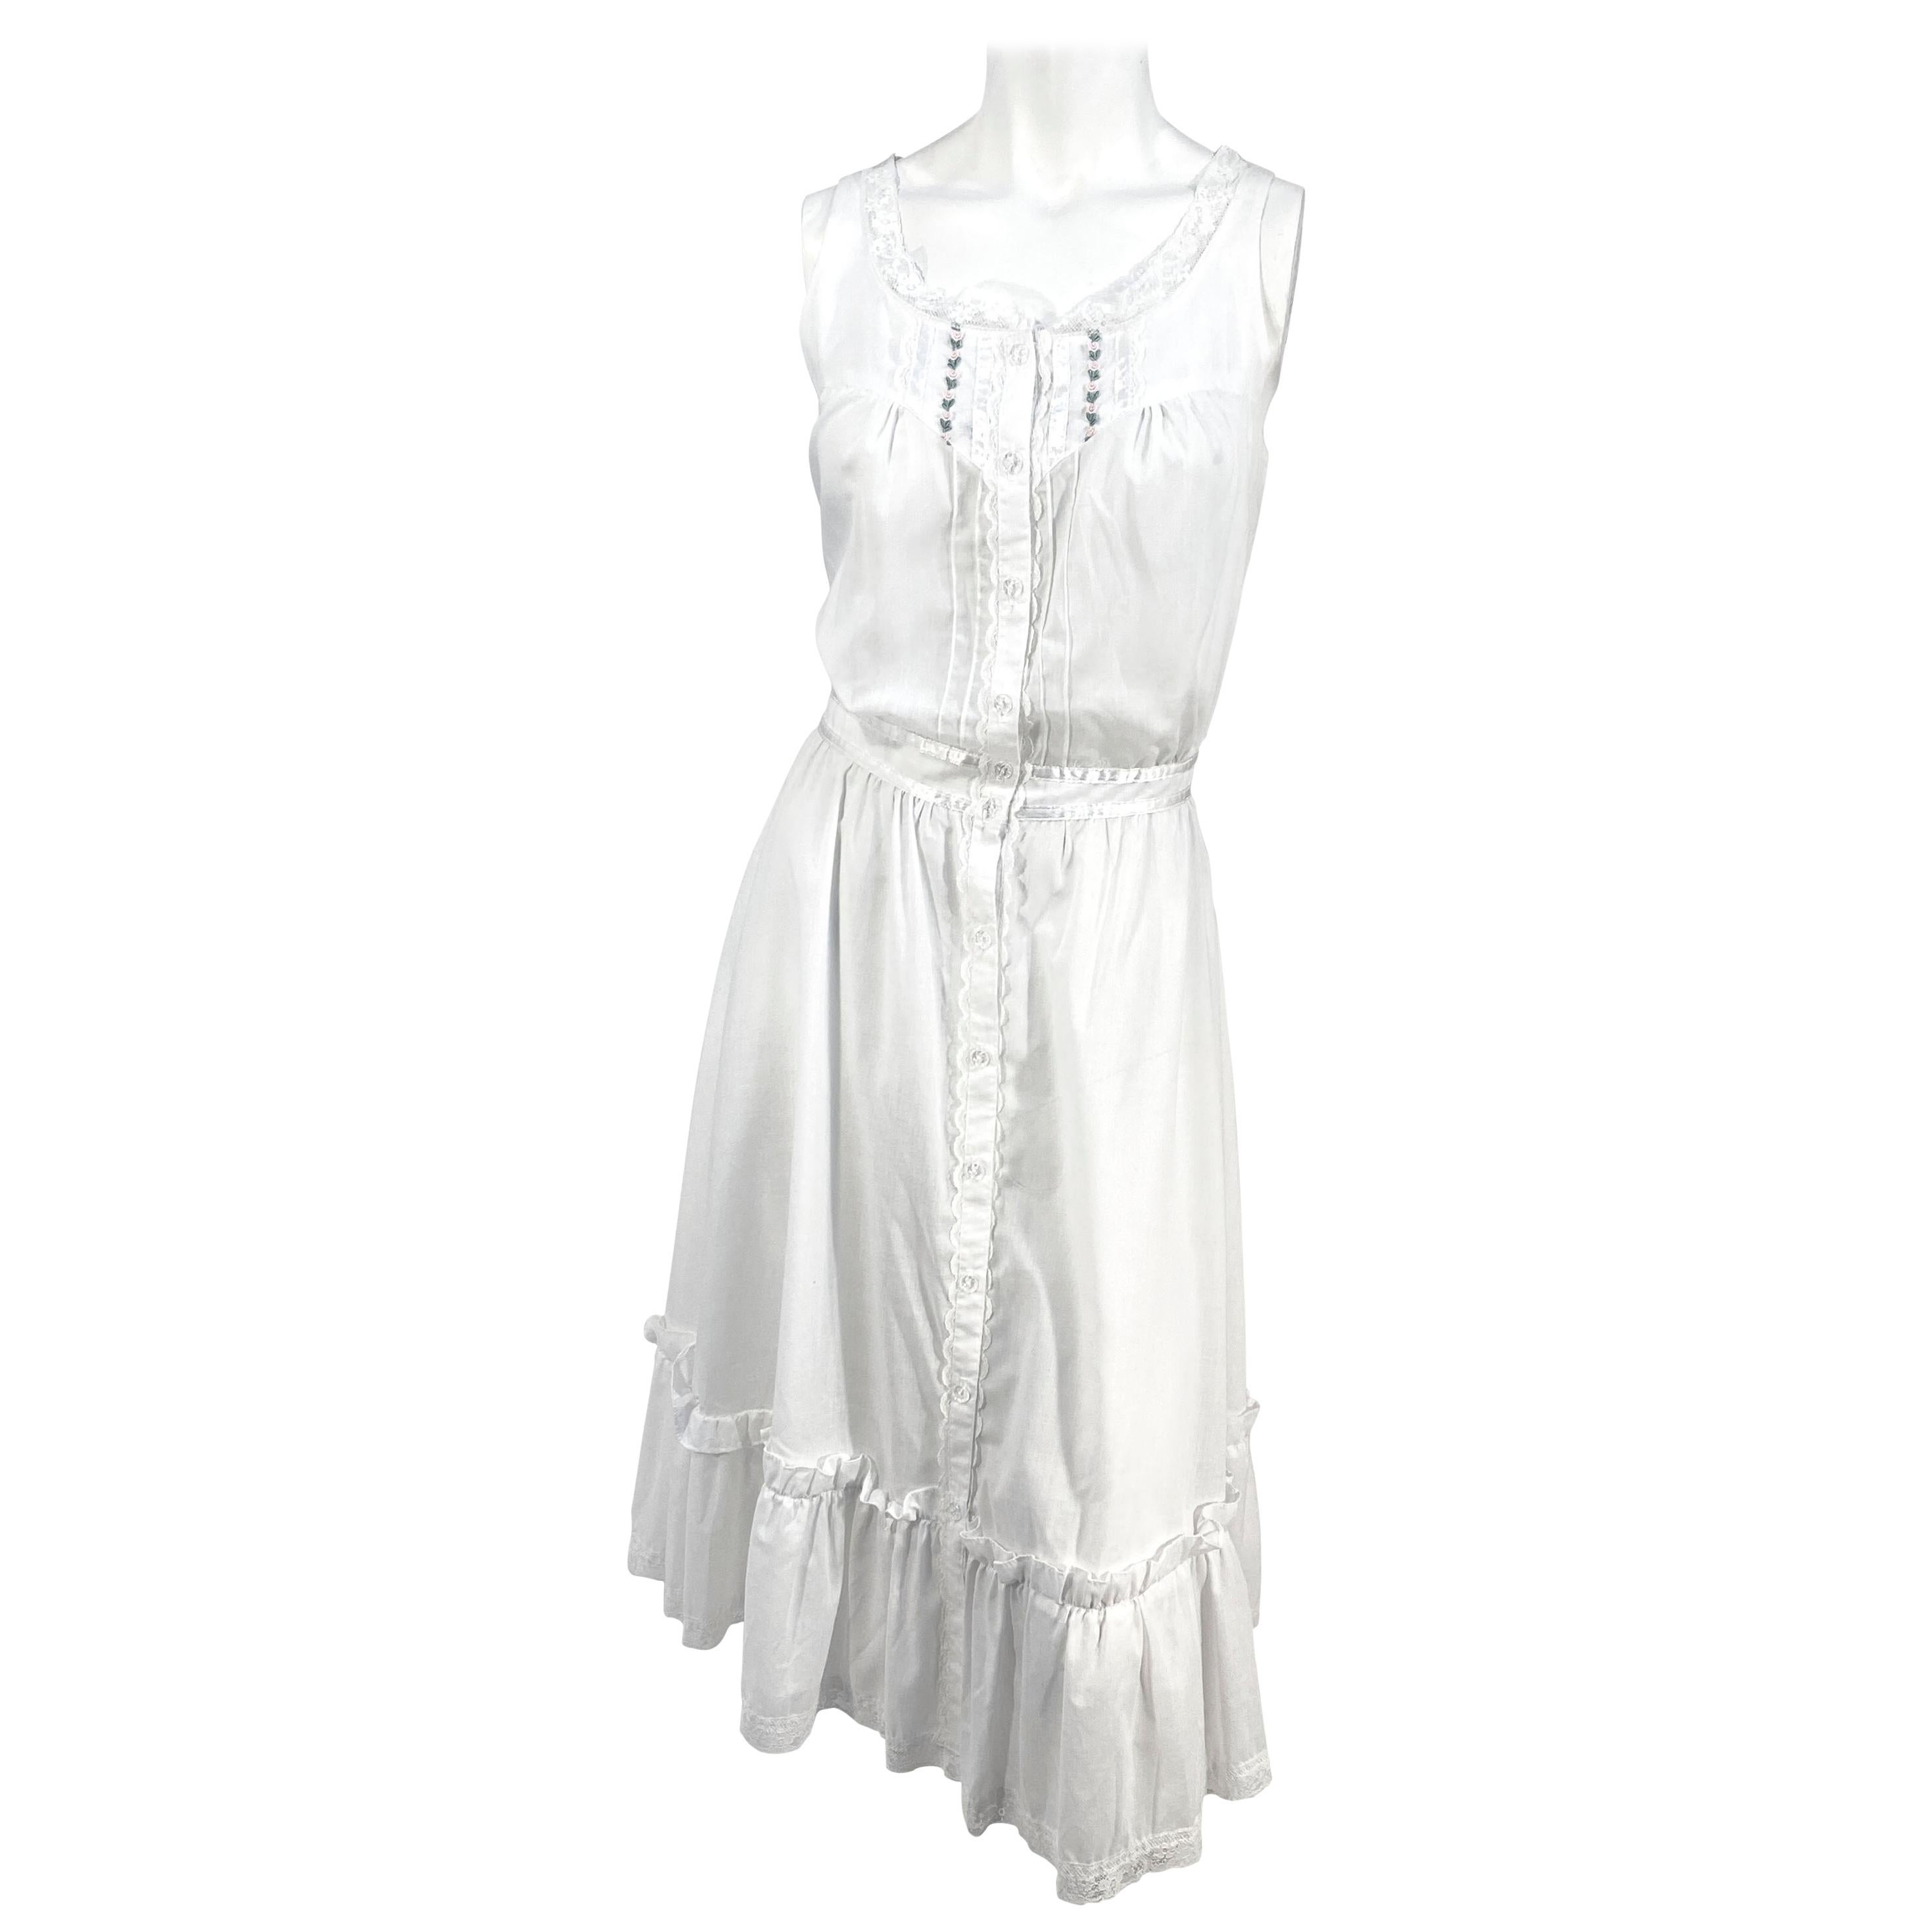 1970s Gunne Sax White Cotton Cottage Dress